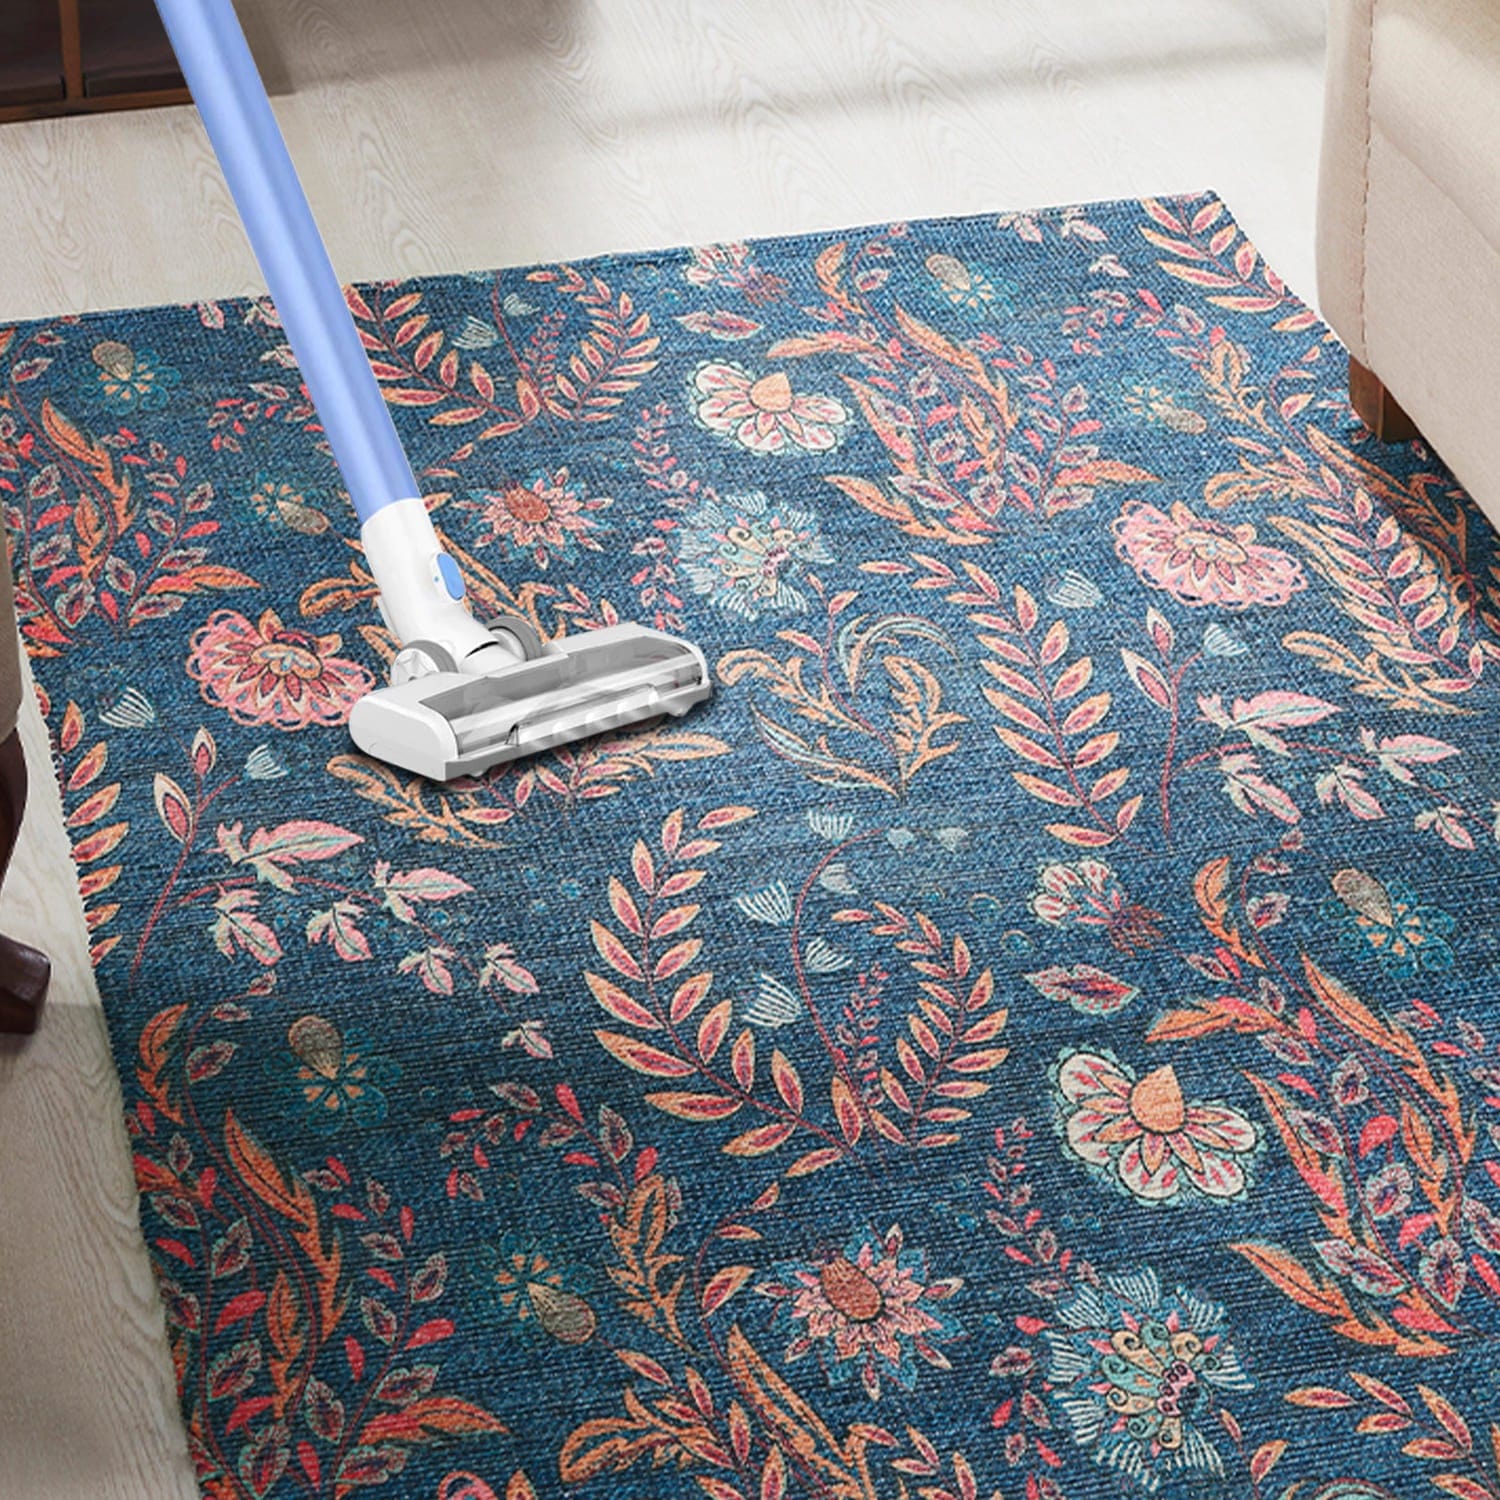 Mona-B Bag Mona B Printed Vintage Dhurrie Carpet Rug Runner Floor Mat for Living Room Bedroom: 3.5 X 5.5 Feet Multi Color- PR-102